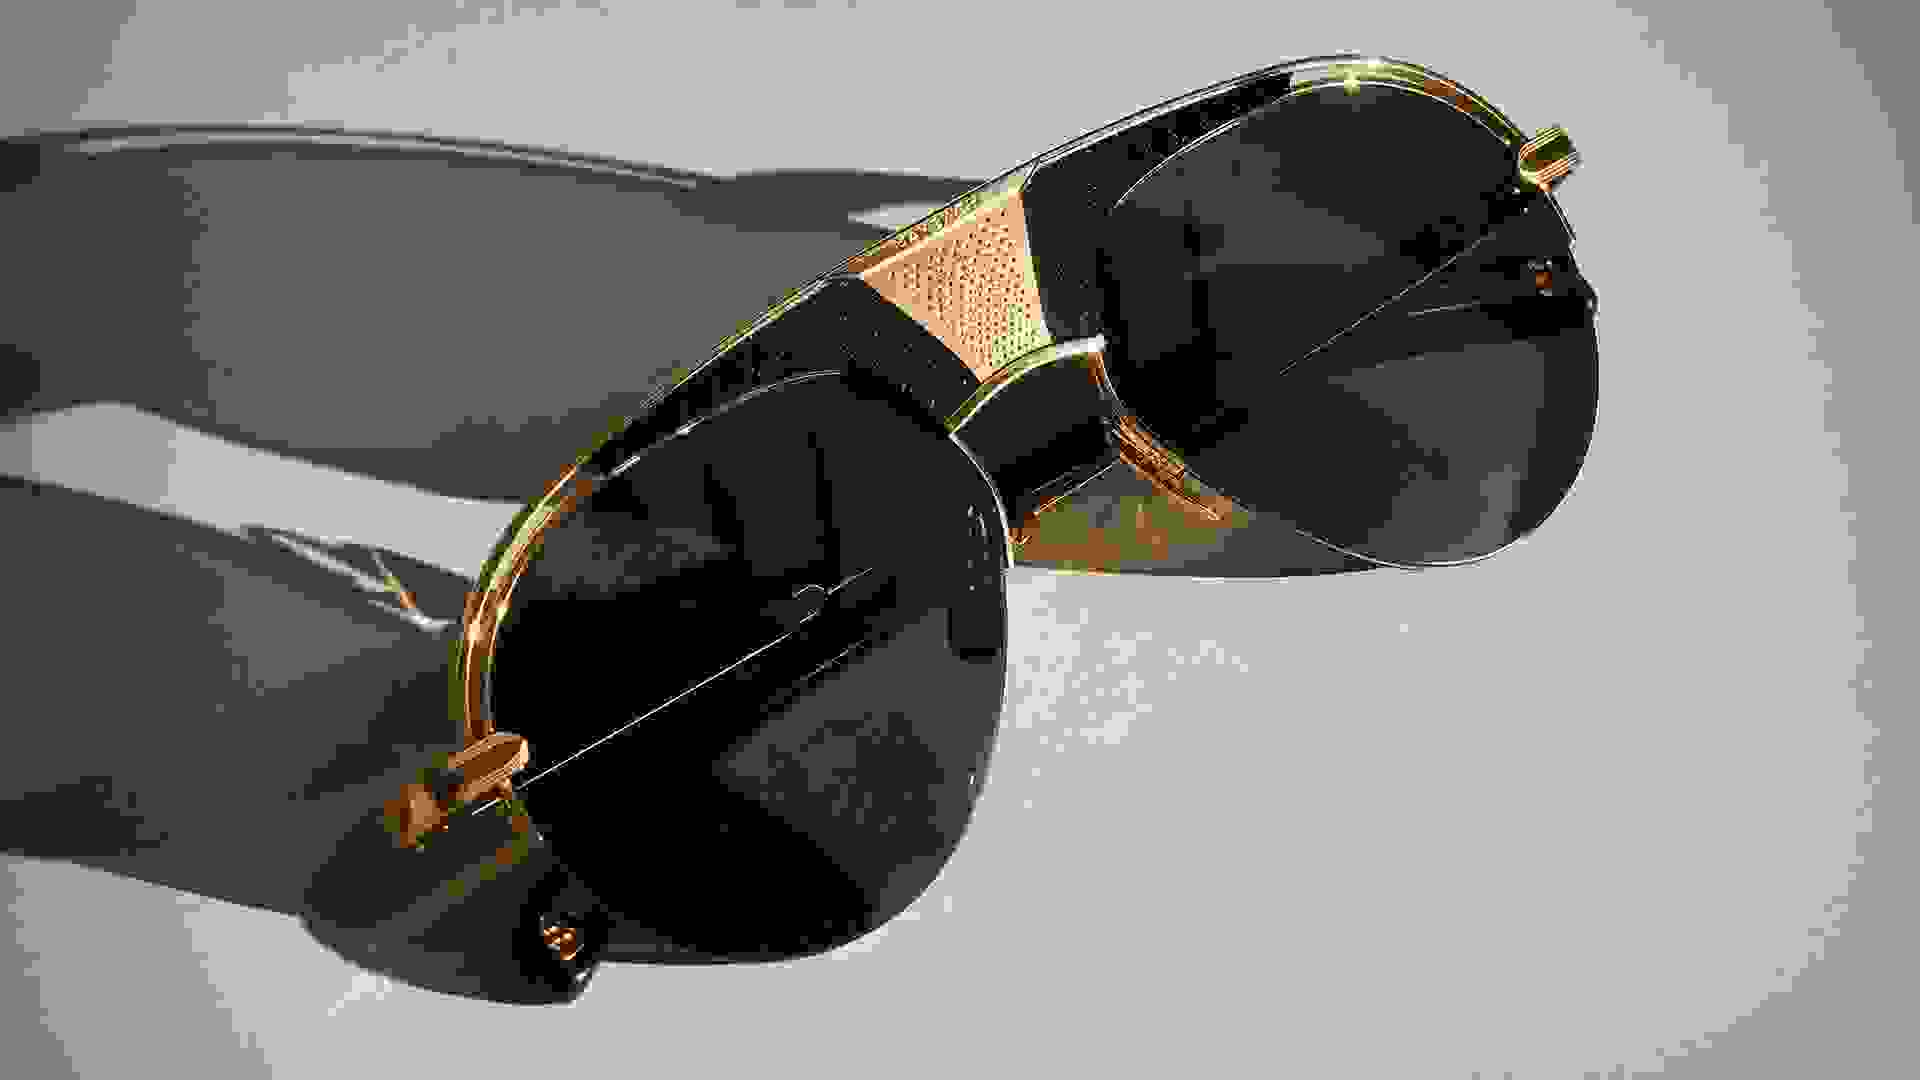 Nahaufnahme von einer Maybach Sonnenbrille mit goldenen Details.